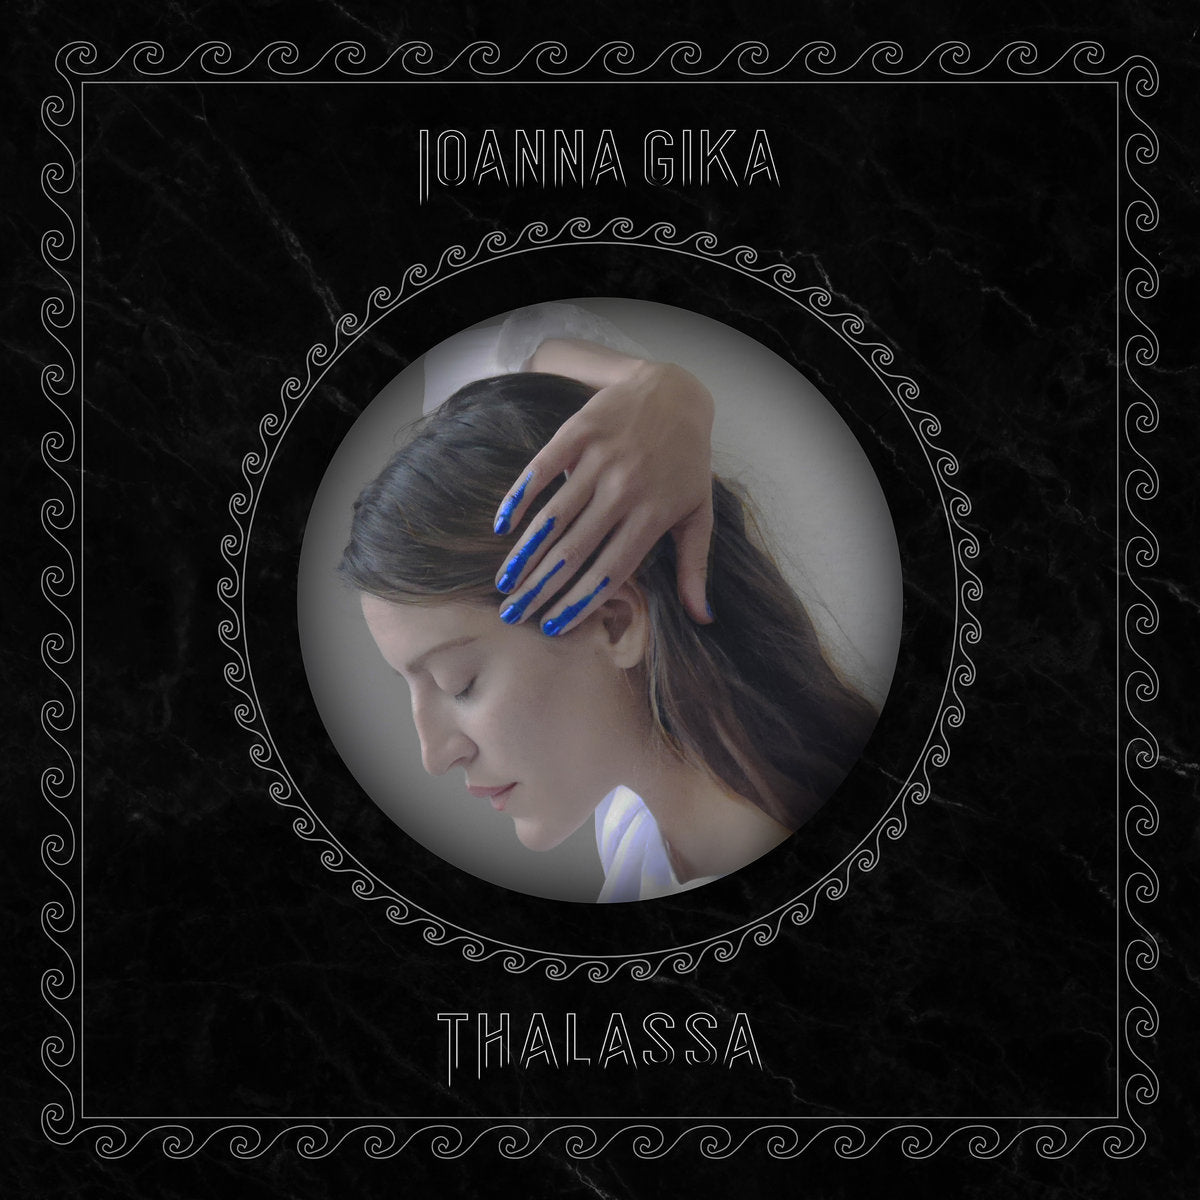 IOANNA GIKA "Thalassa" LP